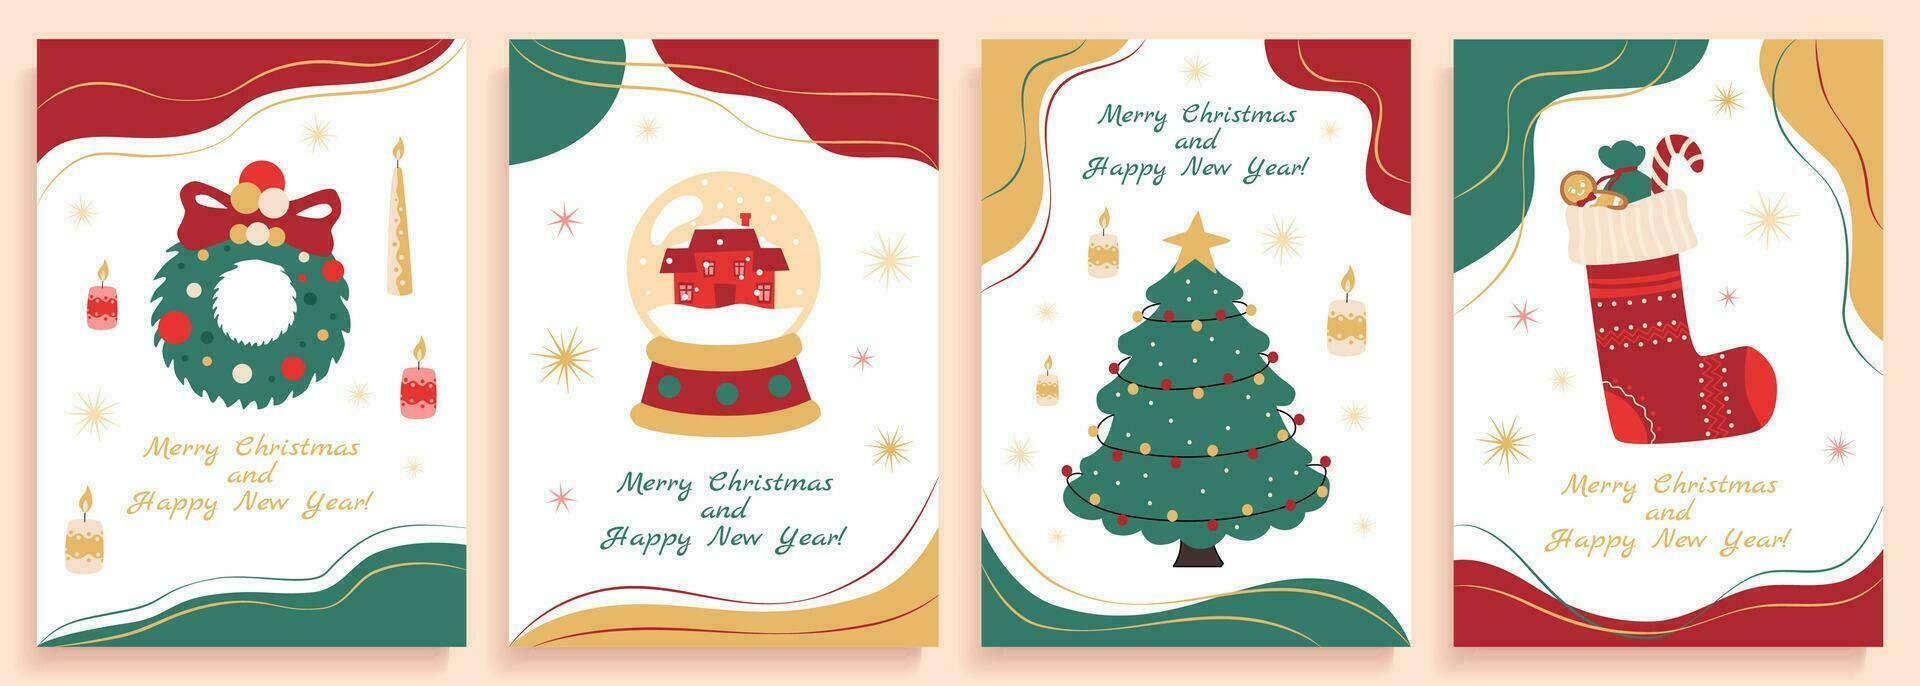 uppsättning av jul posters med söt platt ritningar av jul och ny år symboler, gran träd, glas boll med snö, strumpa med gåvor och krans. vektor illustration.